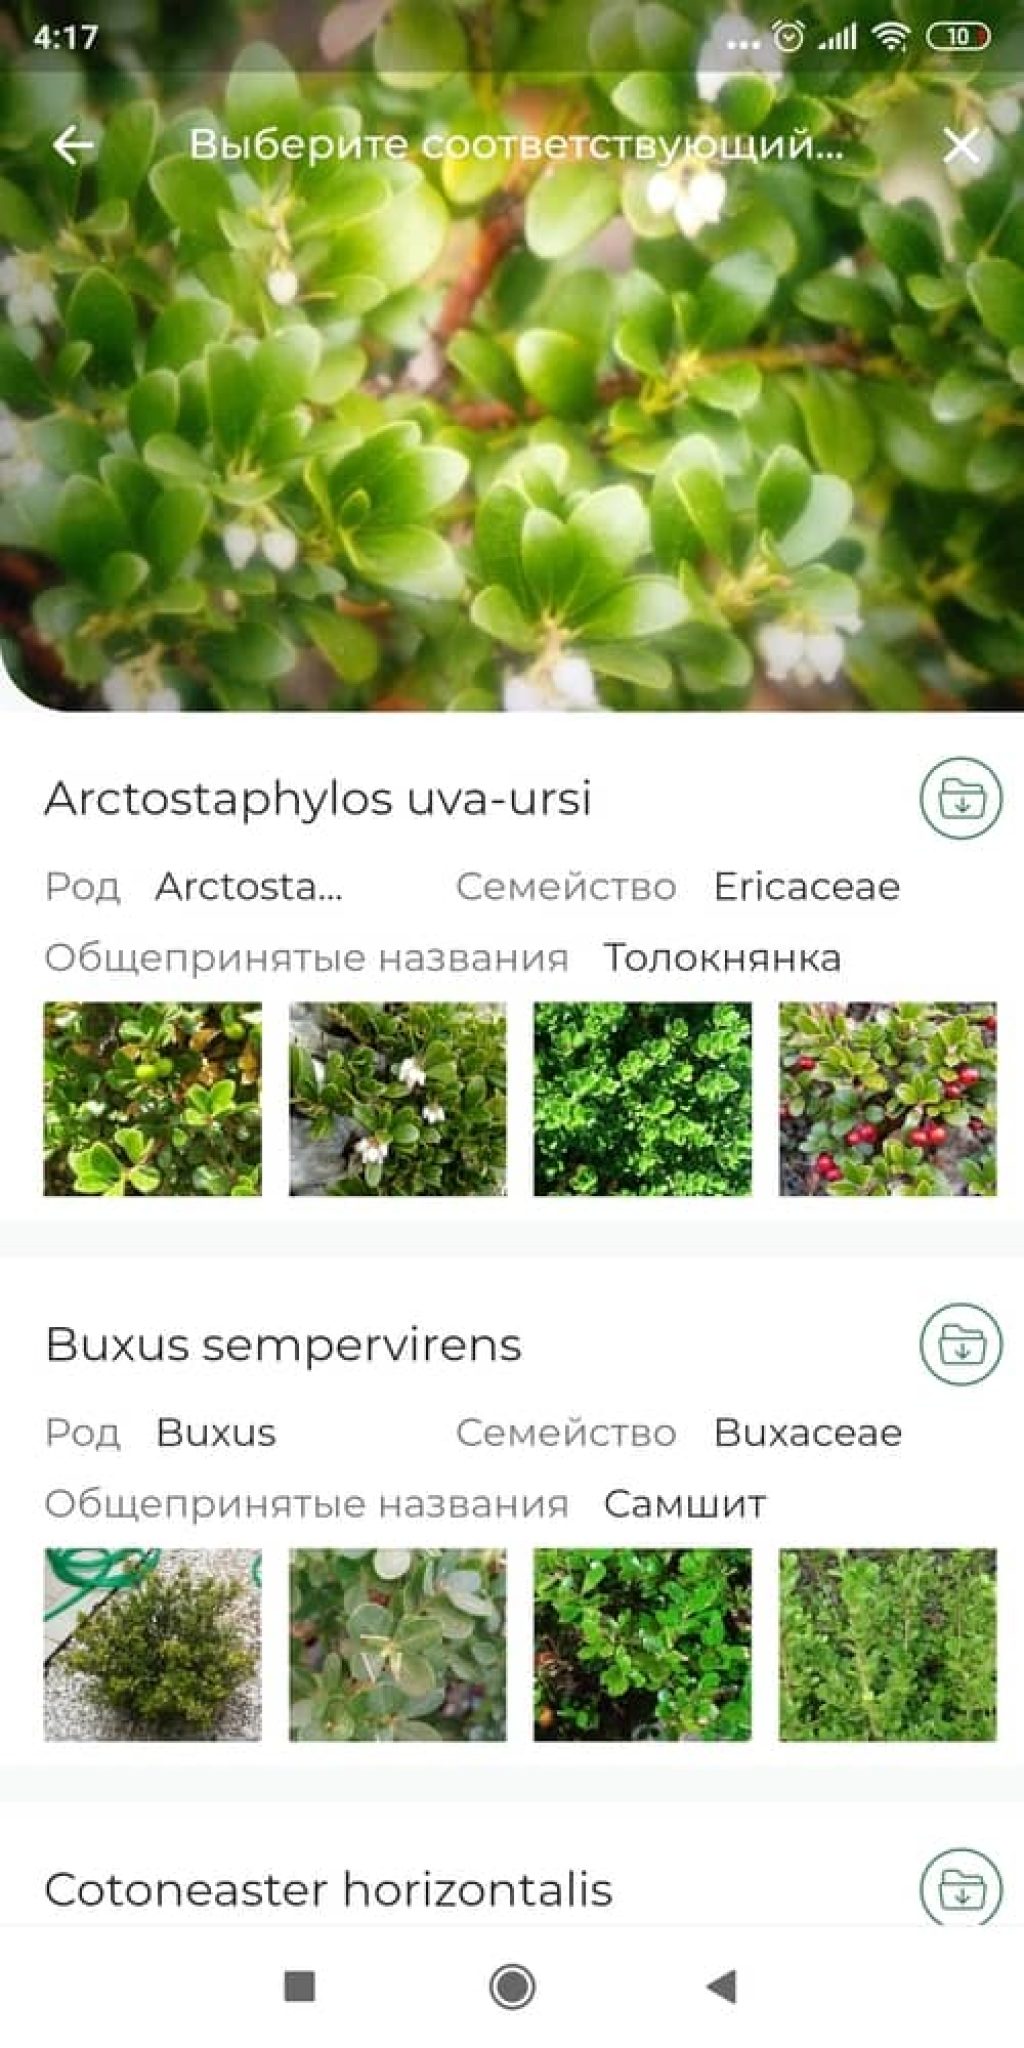 Приложение по определению растений по фото на русском